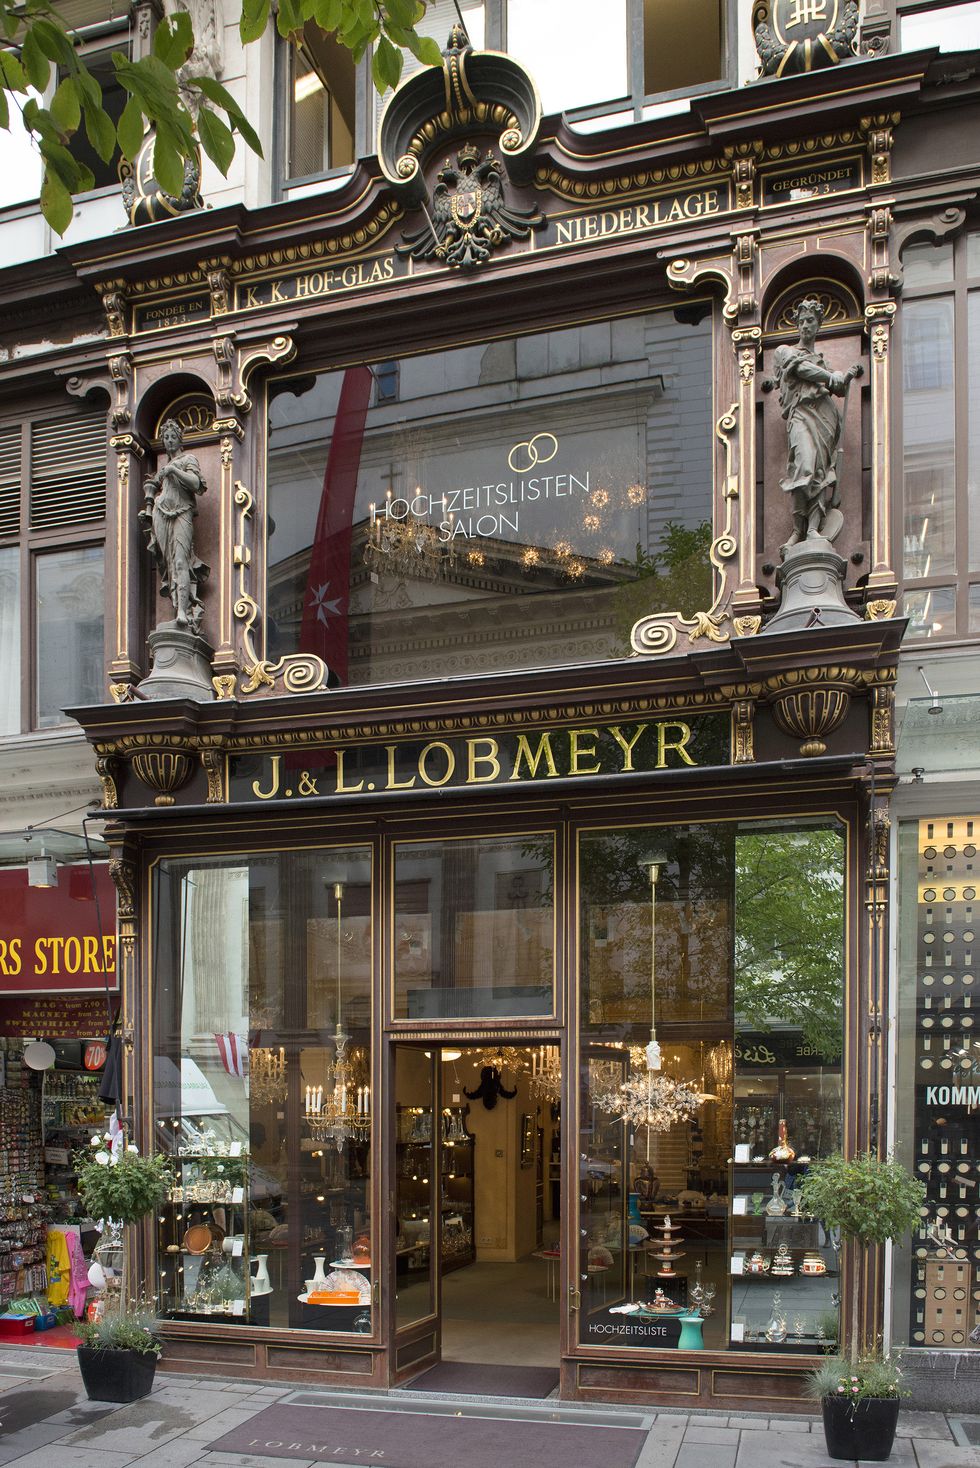 伊莉莎白皇后最愛用的餐具品牌—歐洲餐瓷花樂雅堂首度引進「奧地利皇瓷奧格騰、世界首富水晶杯」